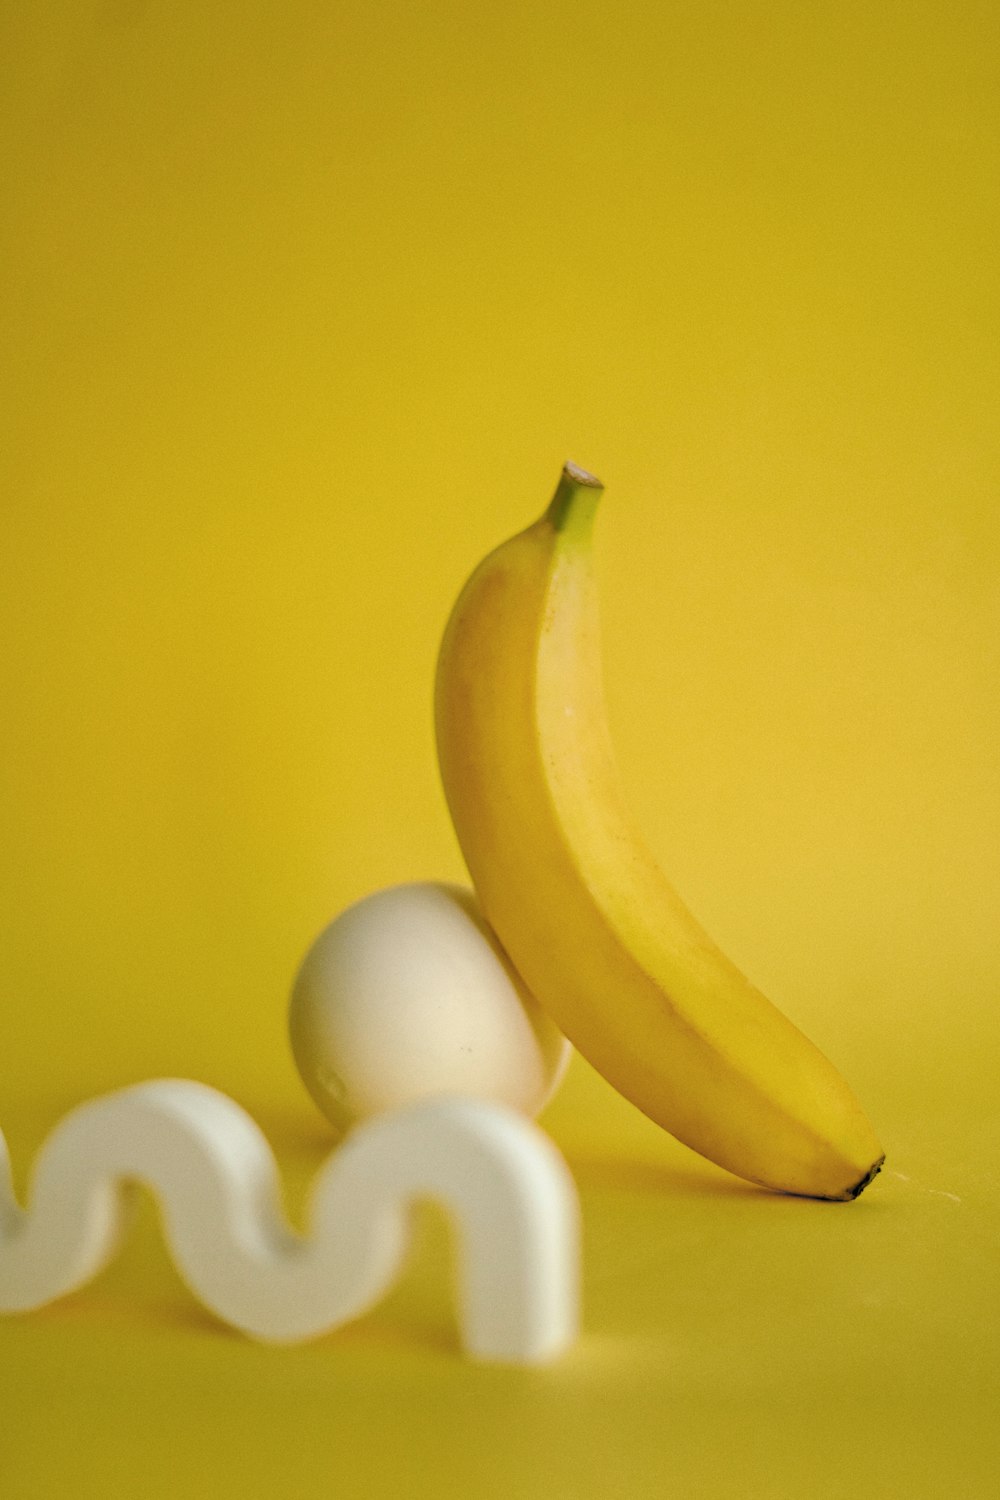 uma banana sentada ao lado de um ovo em um fundo amarelo